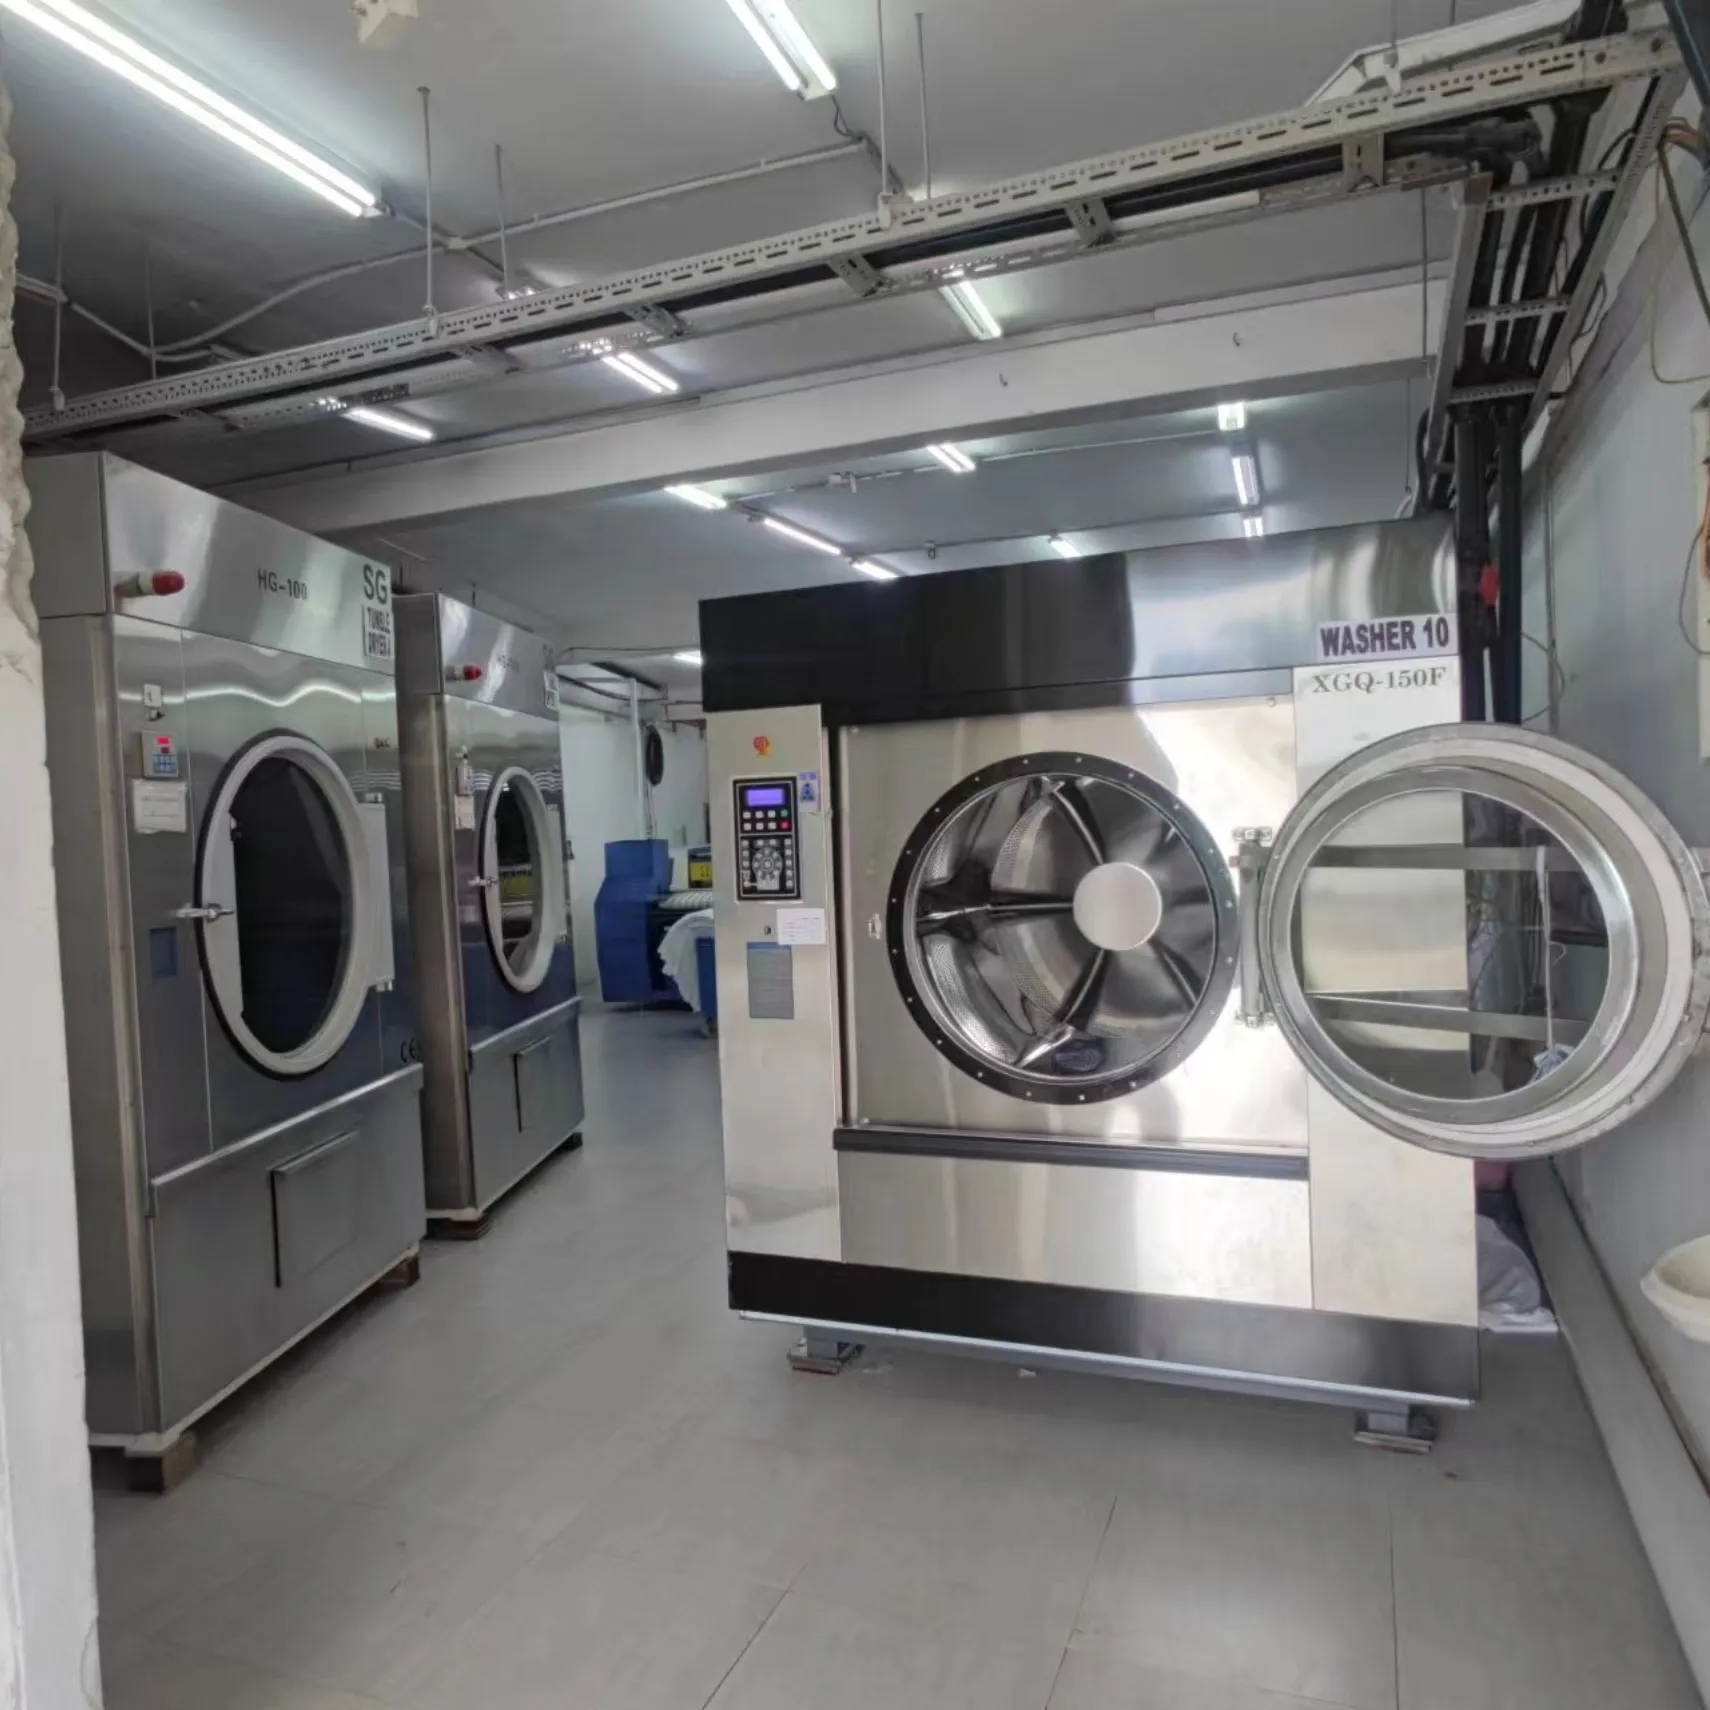 מכונות כביסה אוטומטיות תעשייתיות למכונת כביסה ומייבשים